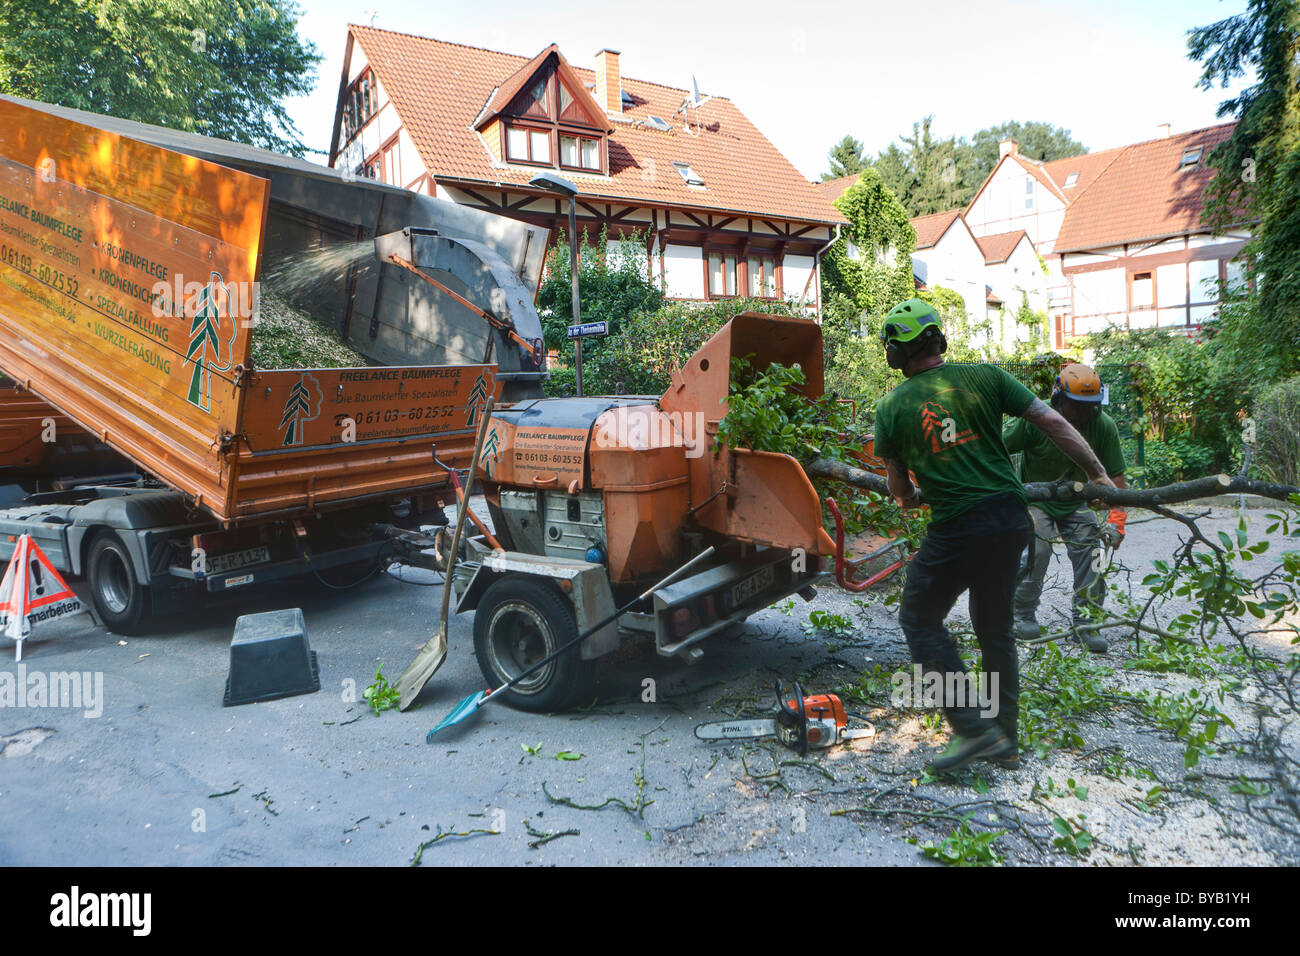 Holzfäller wirft einen Schnitt auf Baum in einen Häcksler für die Zerkleinerung, Deutschland, Europa Stockfoto